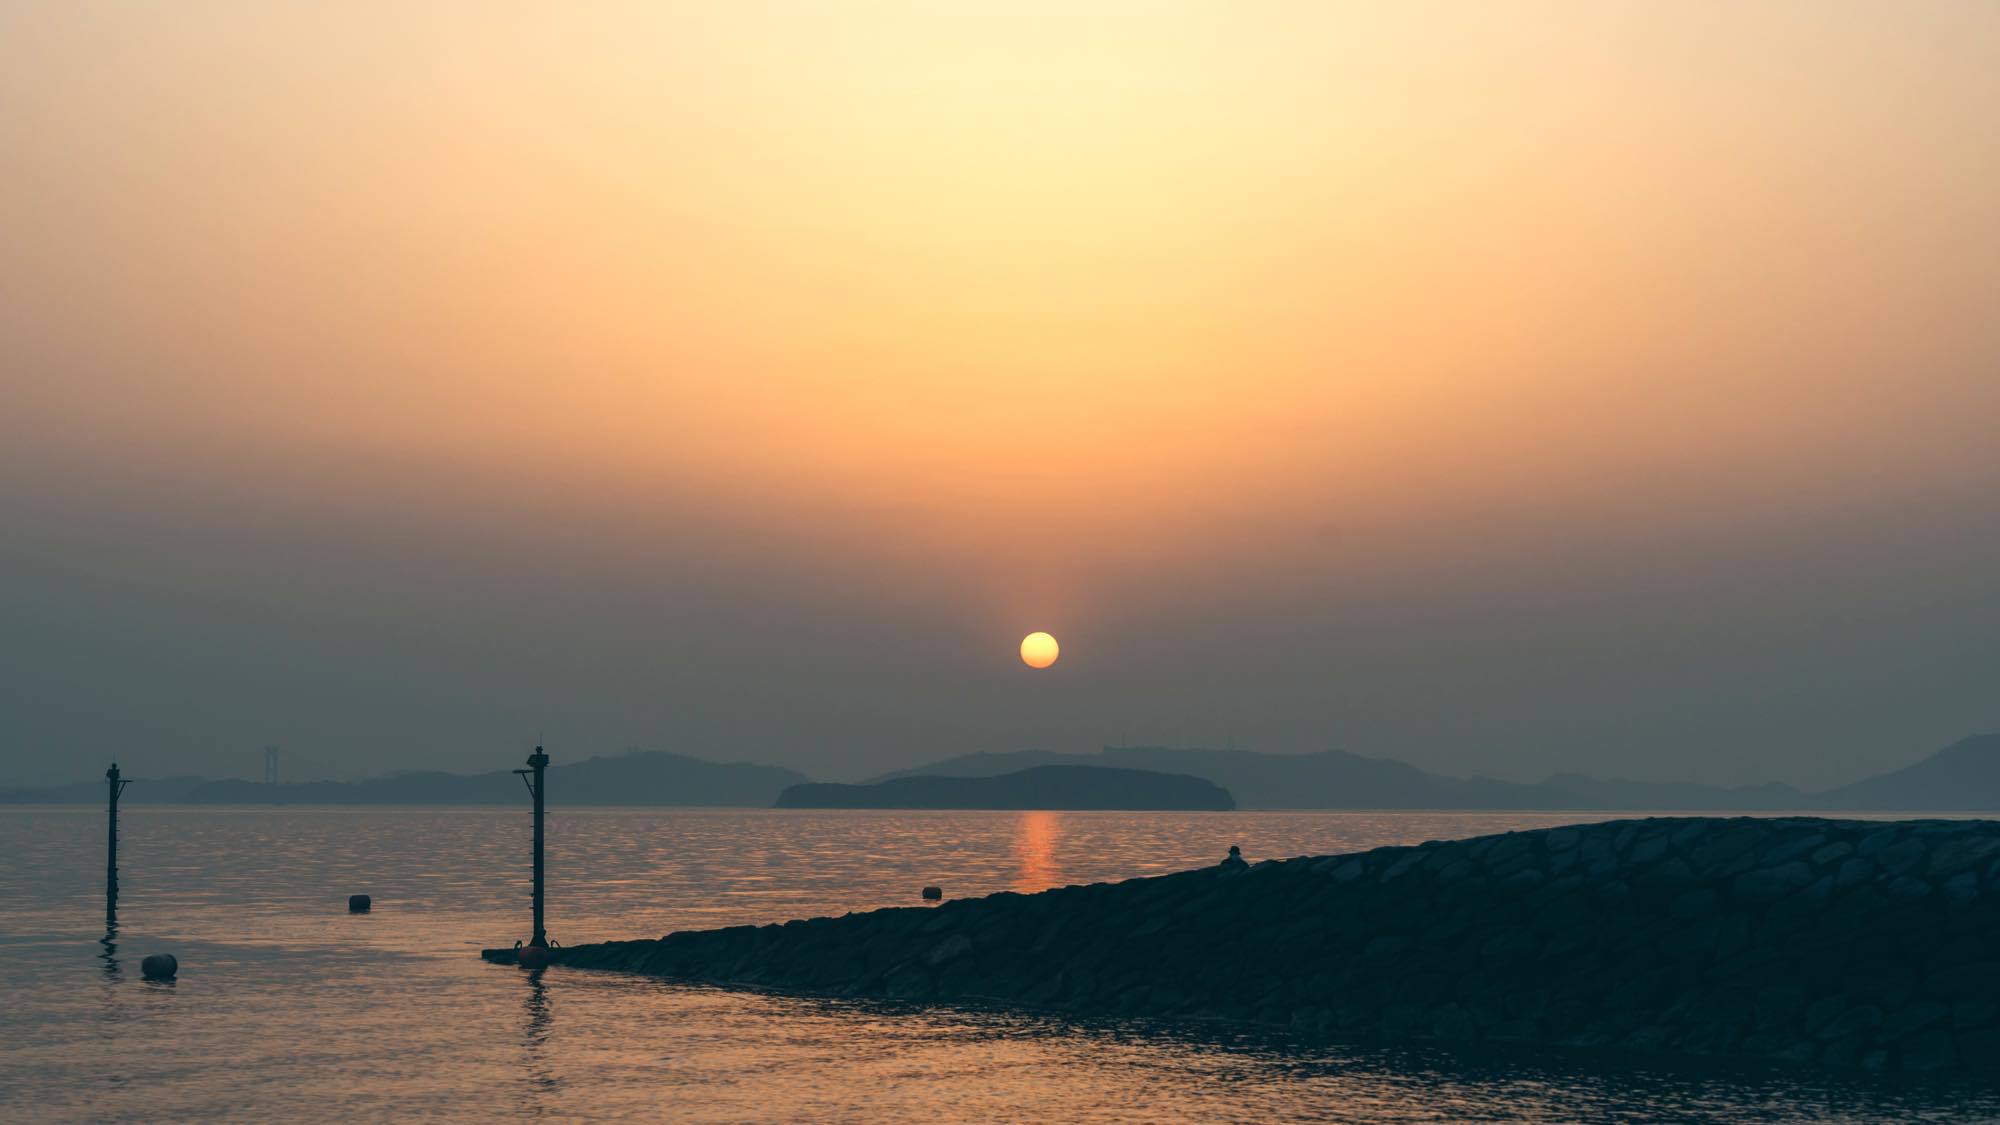 渋川海岸からの夕日「日本渚百選」に選べるほどの美しさです